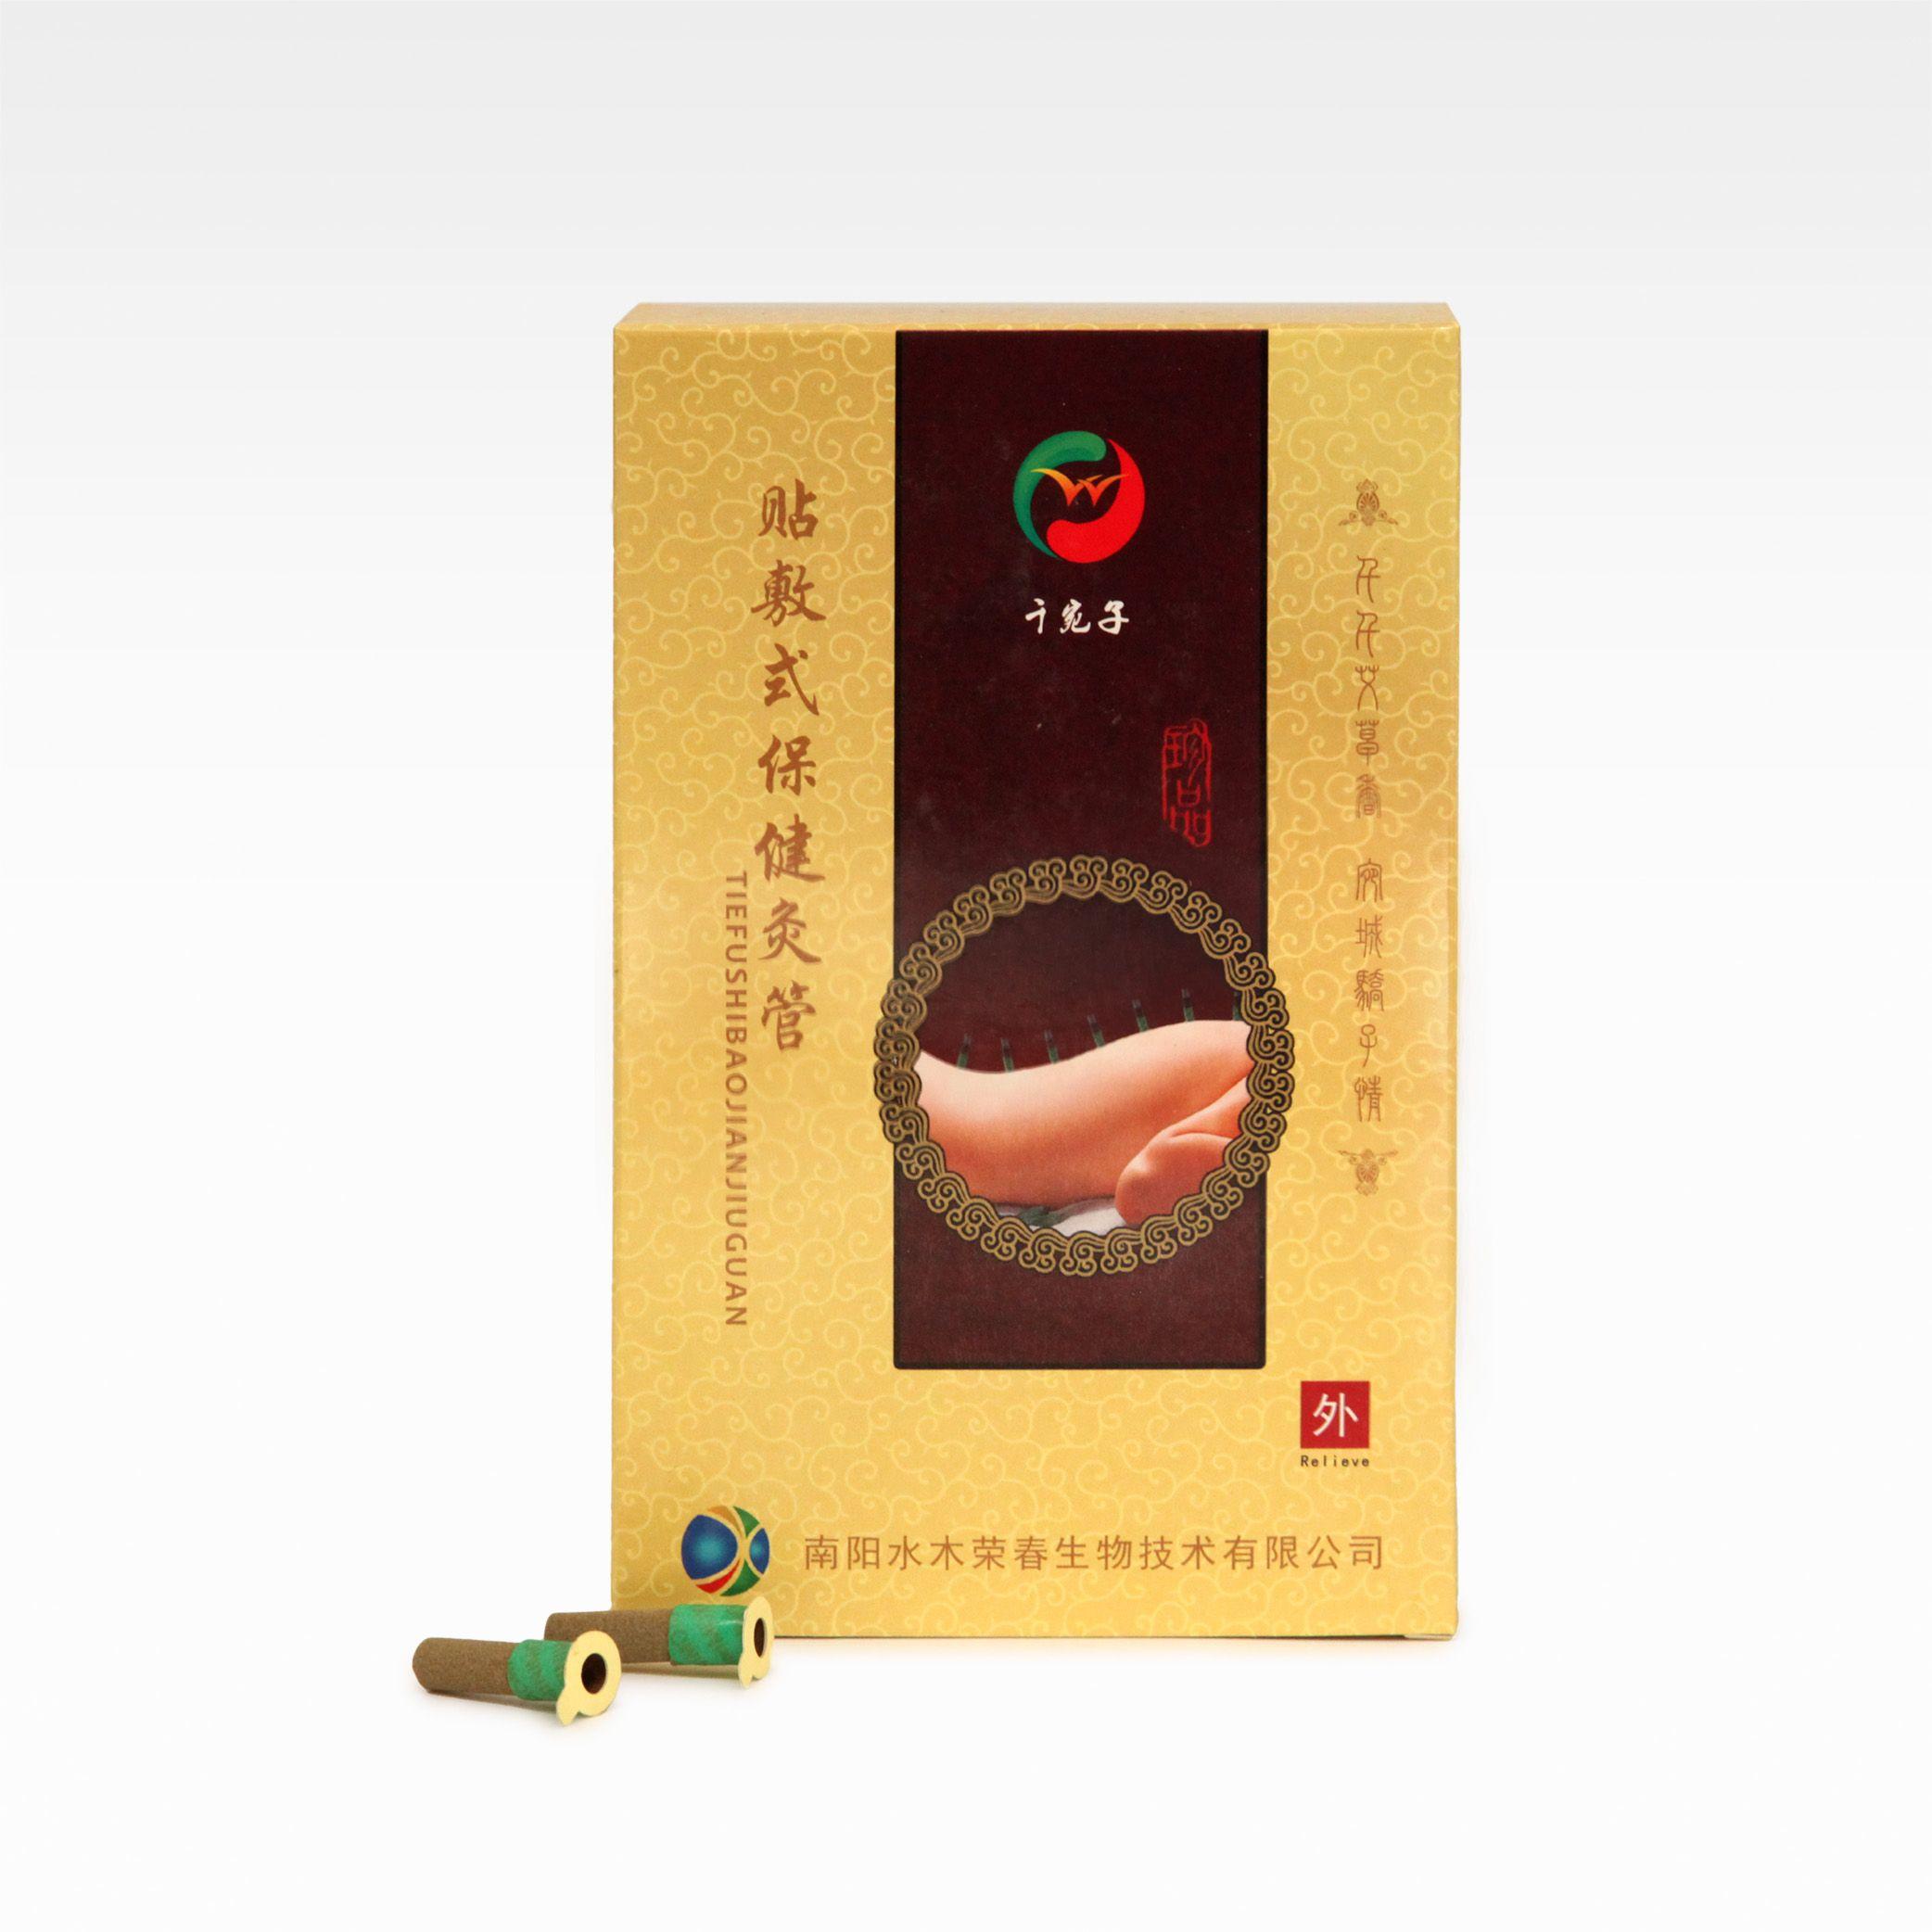 Image de Tie fu shi bao jian jiu guan - Moxa adhésifs à faible dégagement de fumée - Boite de 180 moxas adhésifs